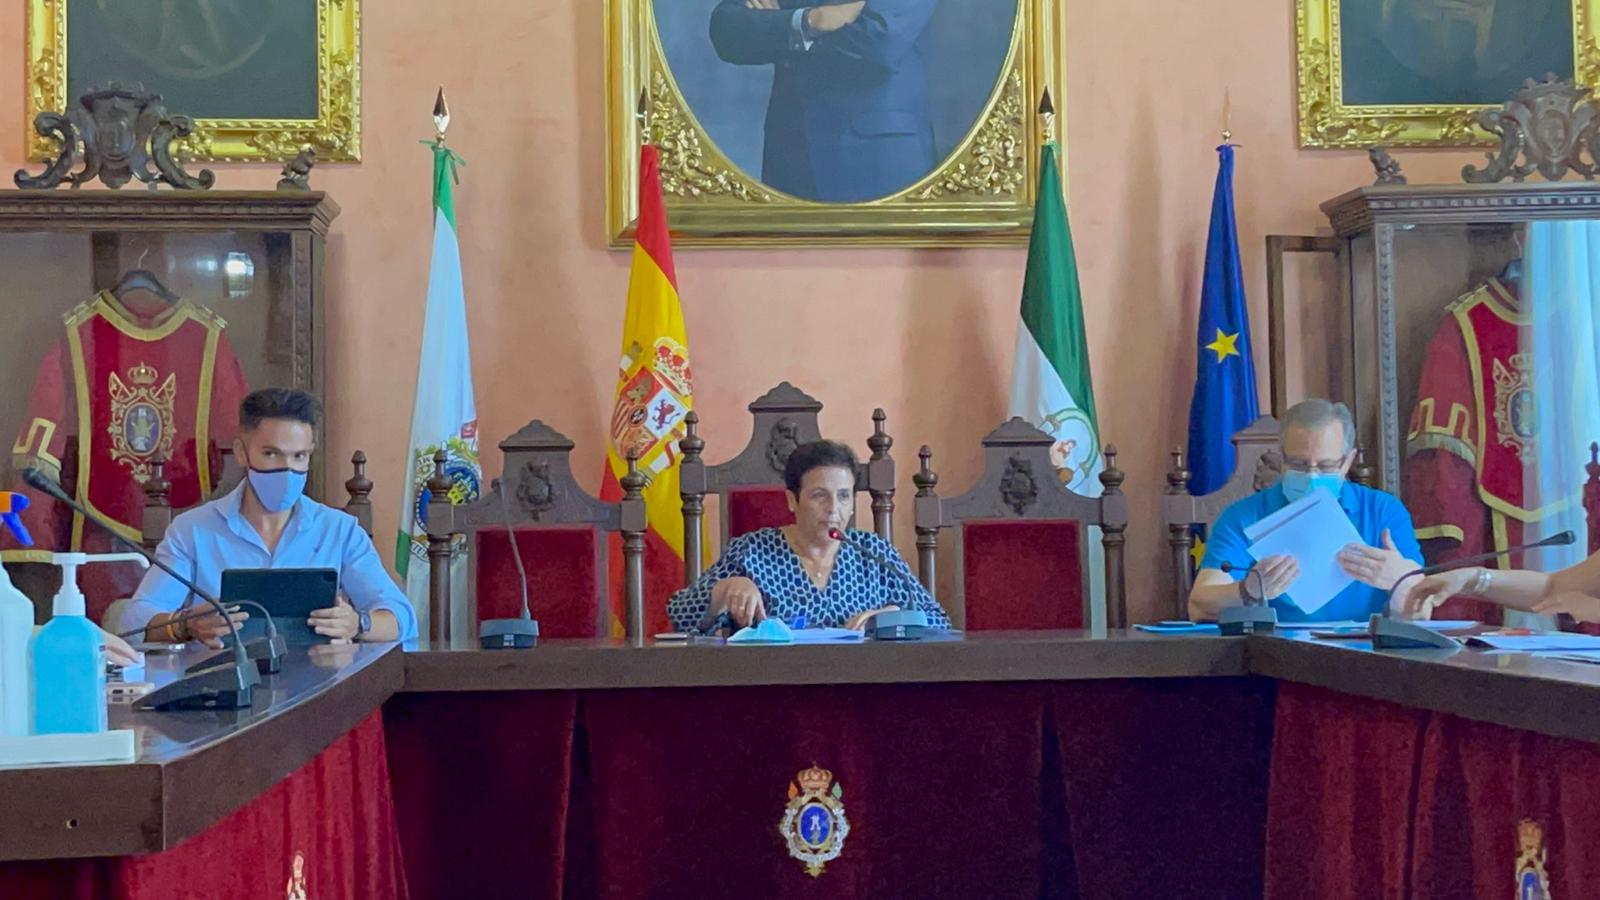 La alcaldesa de Huéscar (PP) dimite para ceder el puesto al portavoz de Cs para cumplir el pacto de 2+2